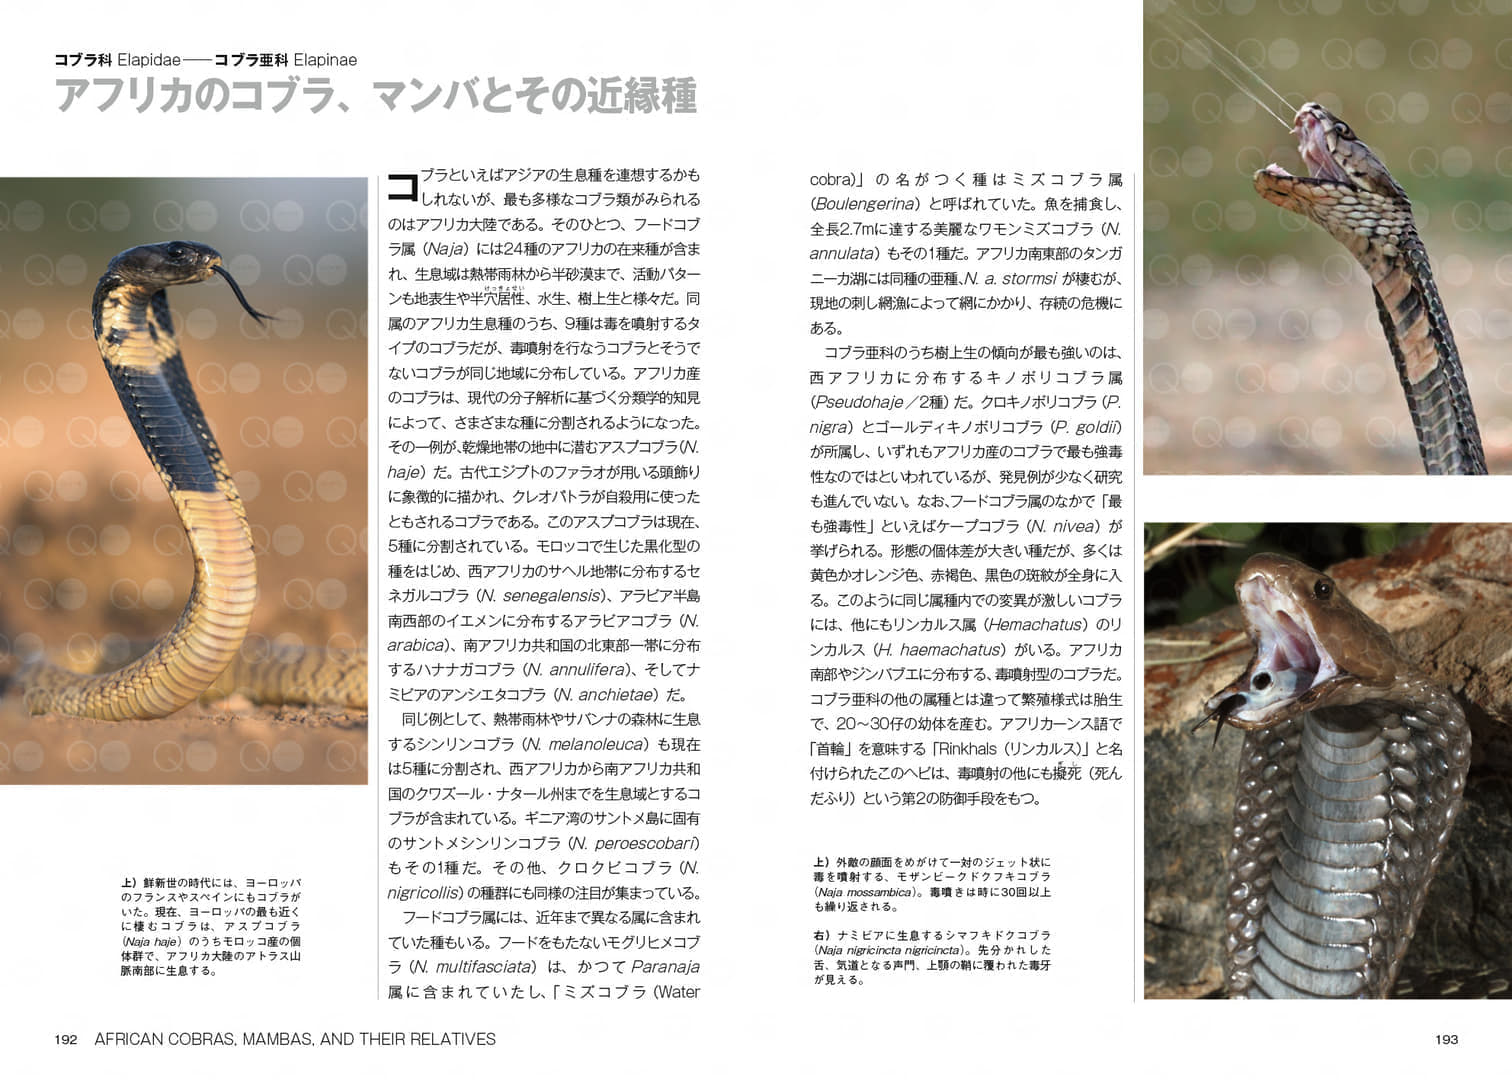 「ヘビ大全 SNAKES OF THE WORLD」が発売。世界に約4000種といわれるヘビを徹底解説した書籍_003